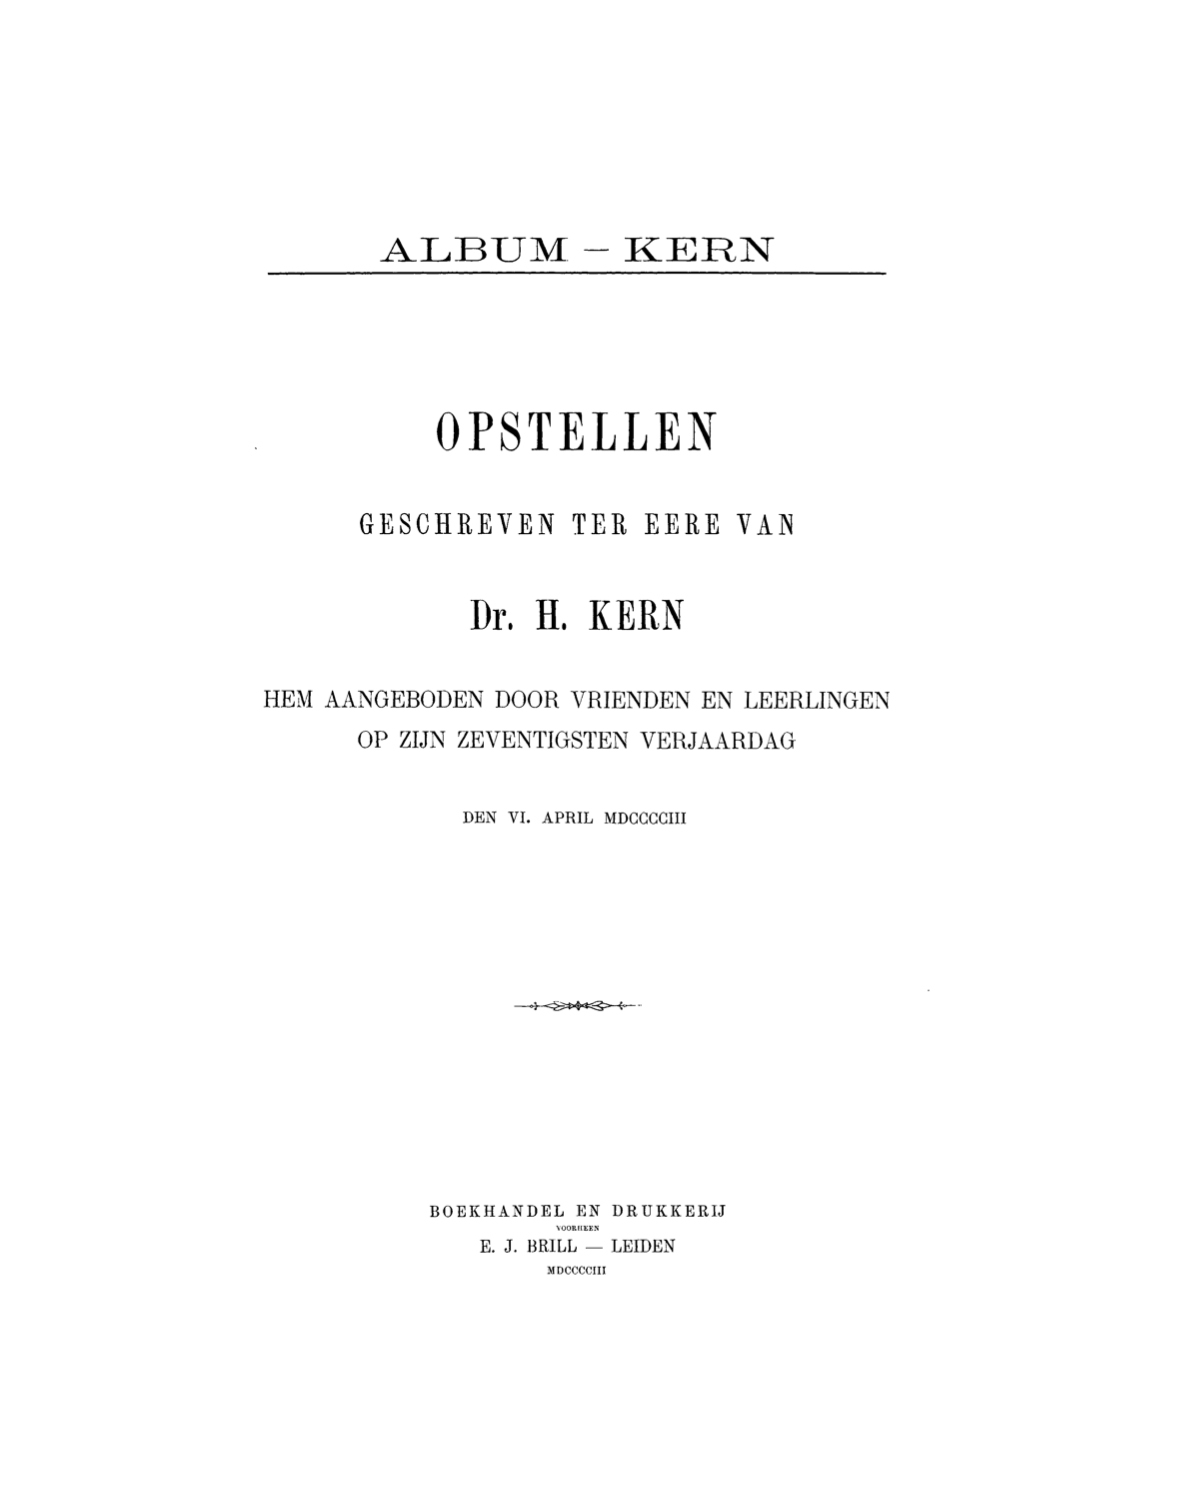 Album-Kern-front.jpg